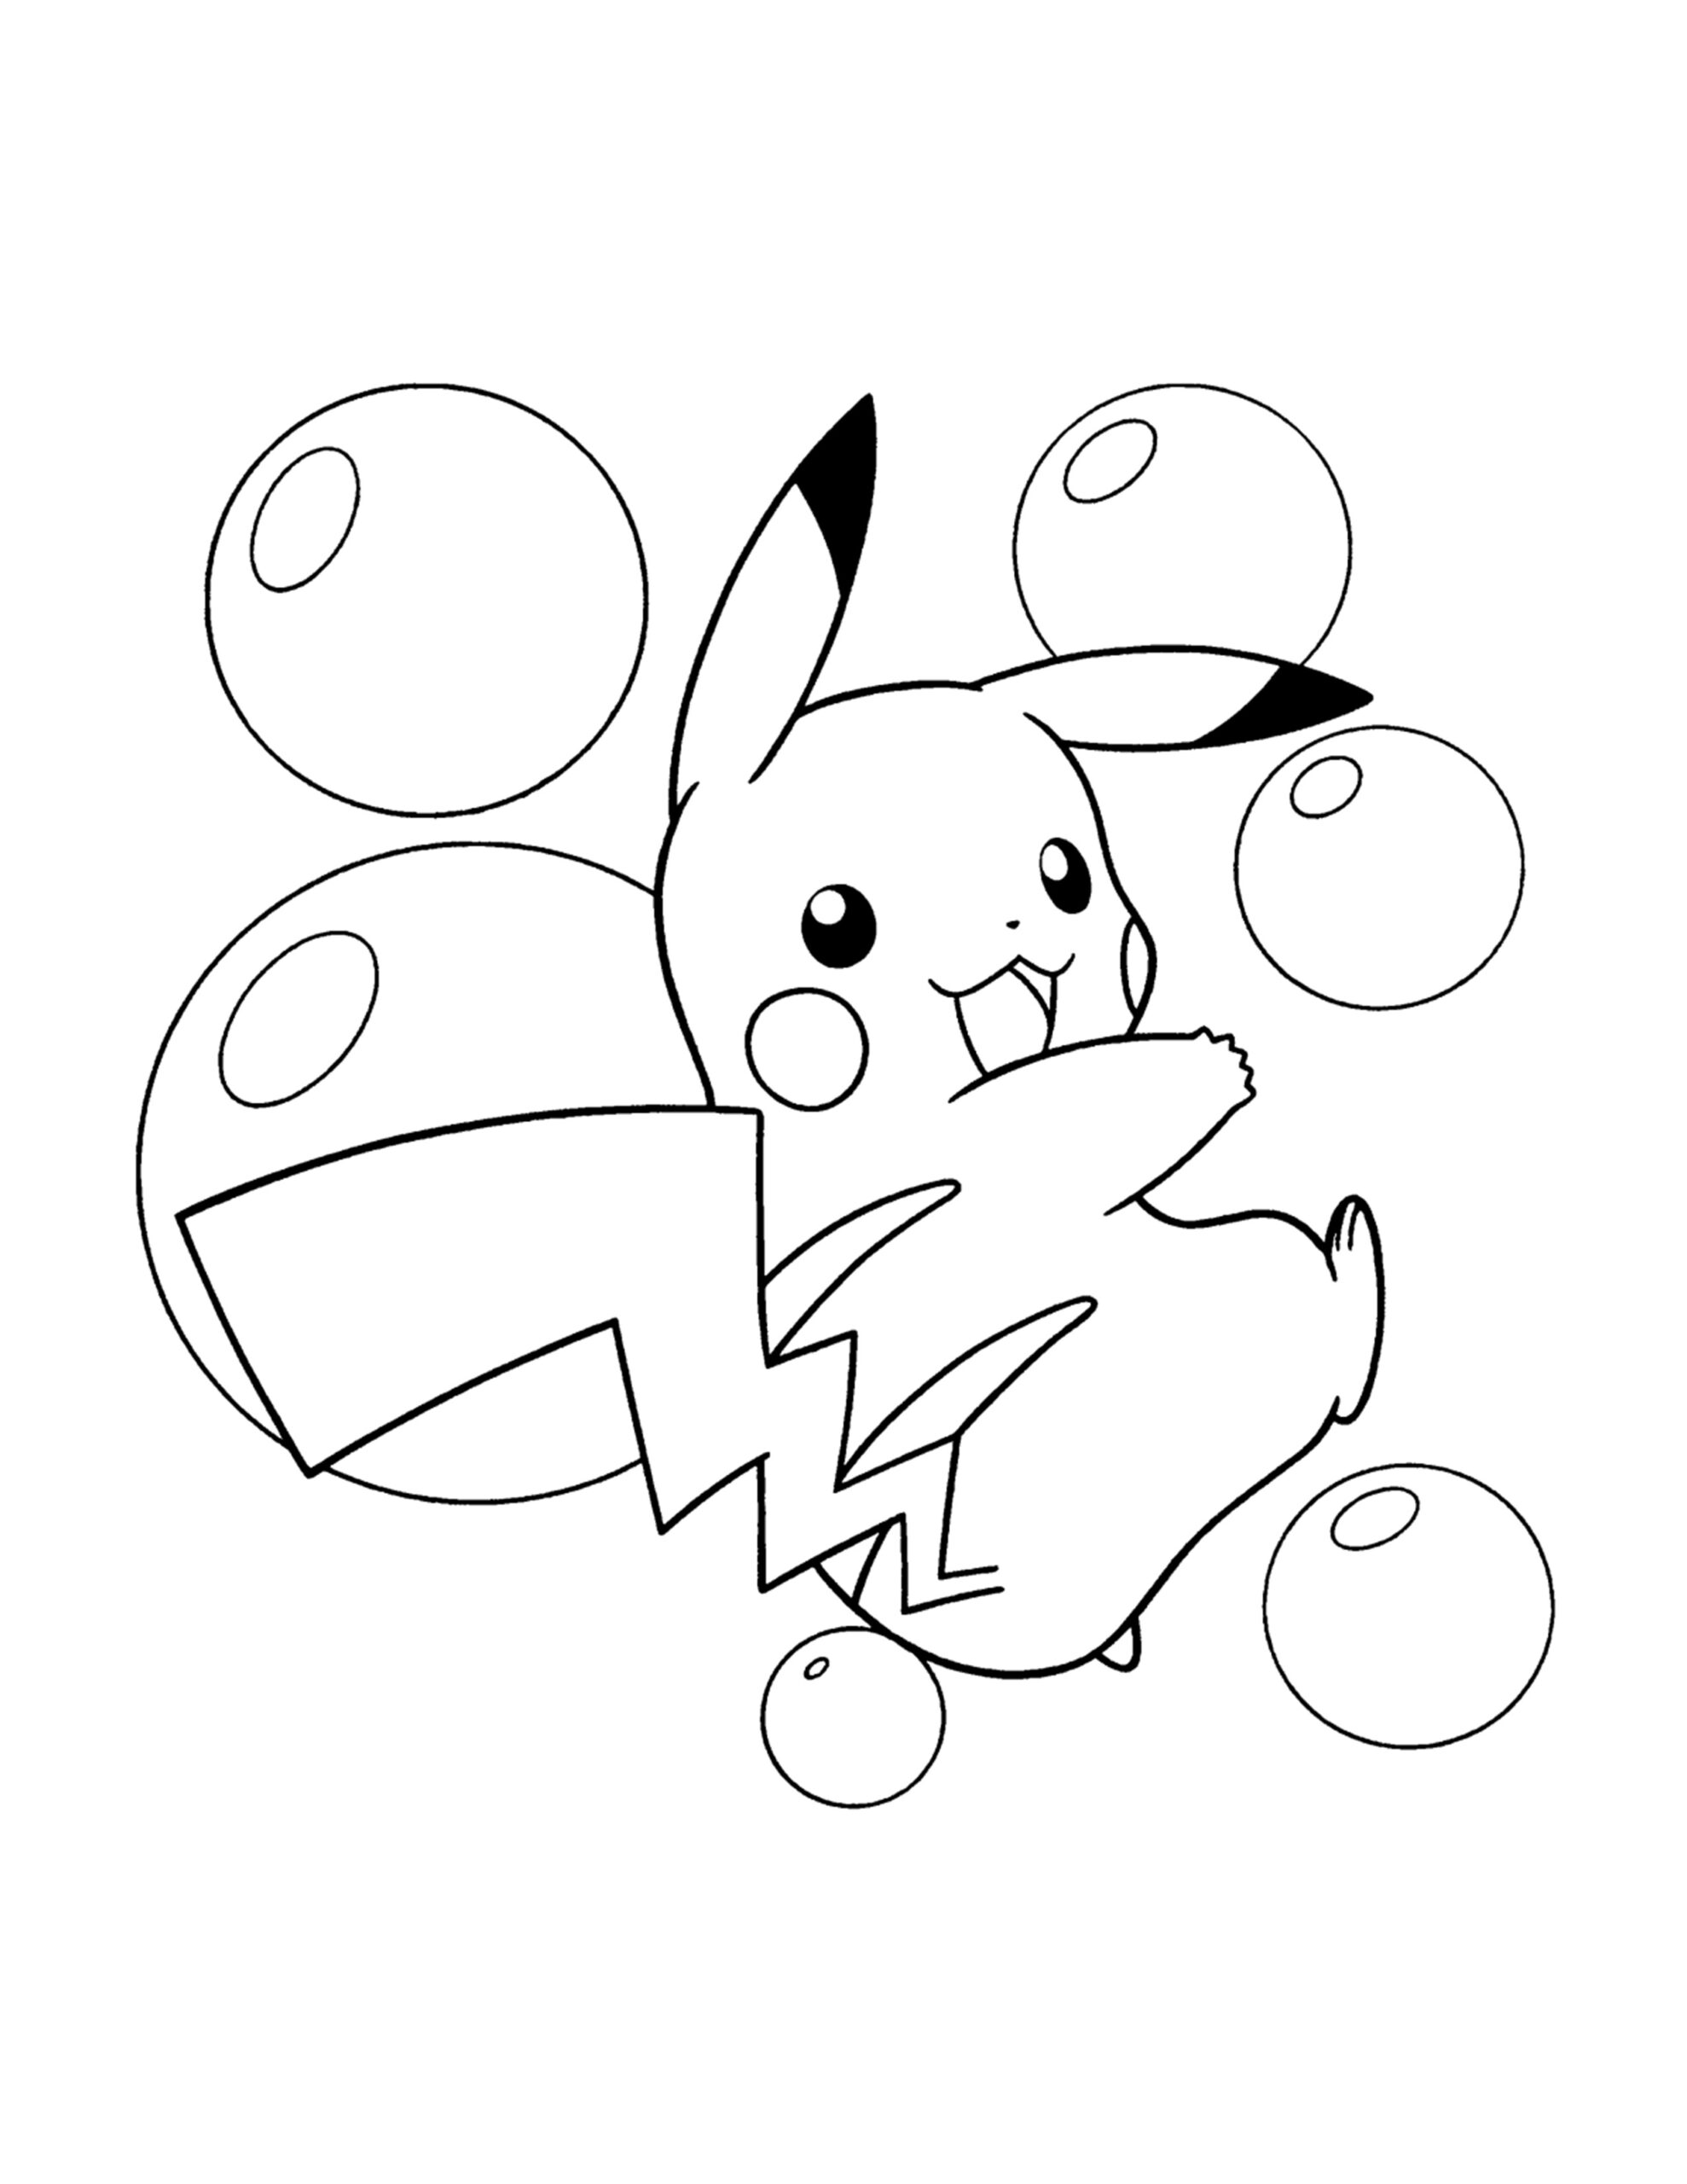 kleurplaat van pikachu gratis downloaden